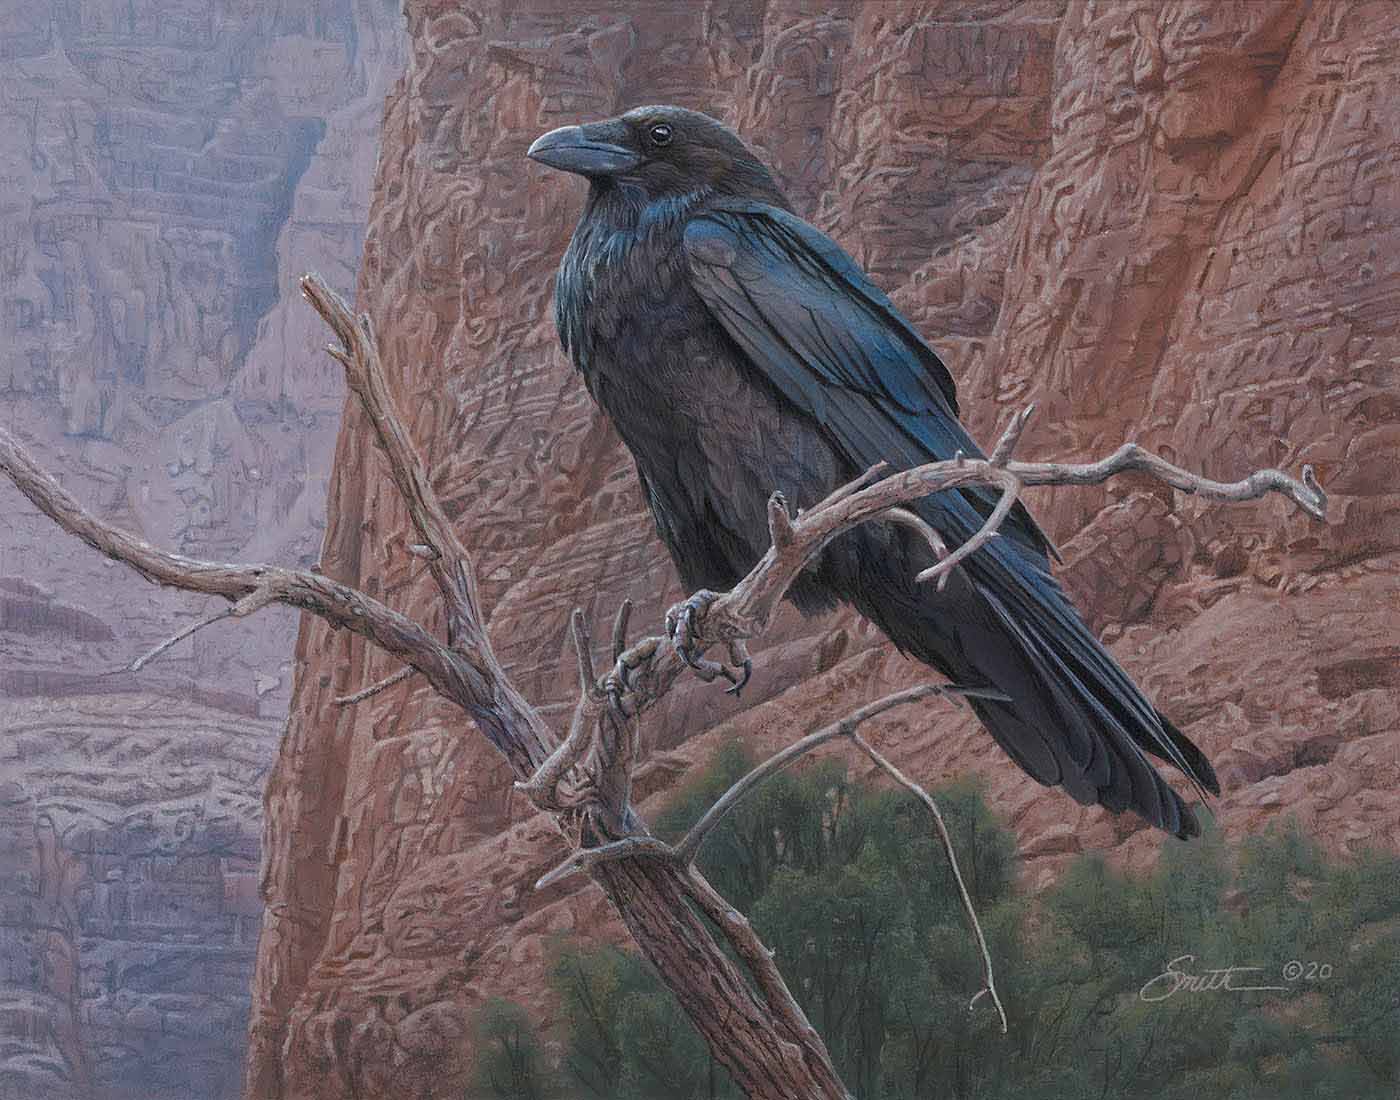 DS – Canyon Raven © Daniel Smith